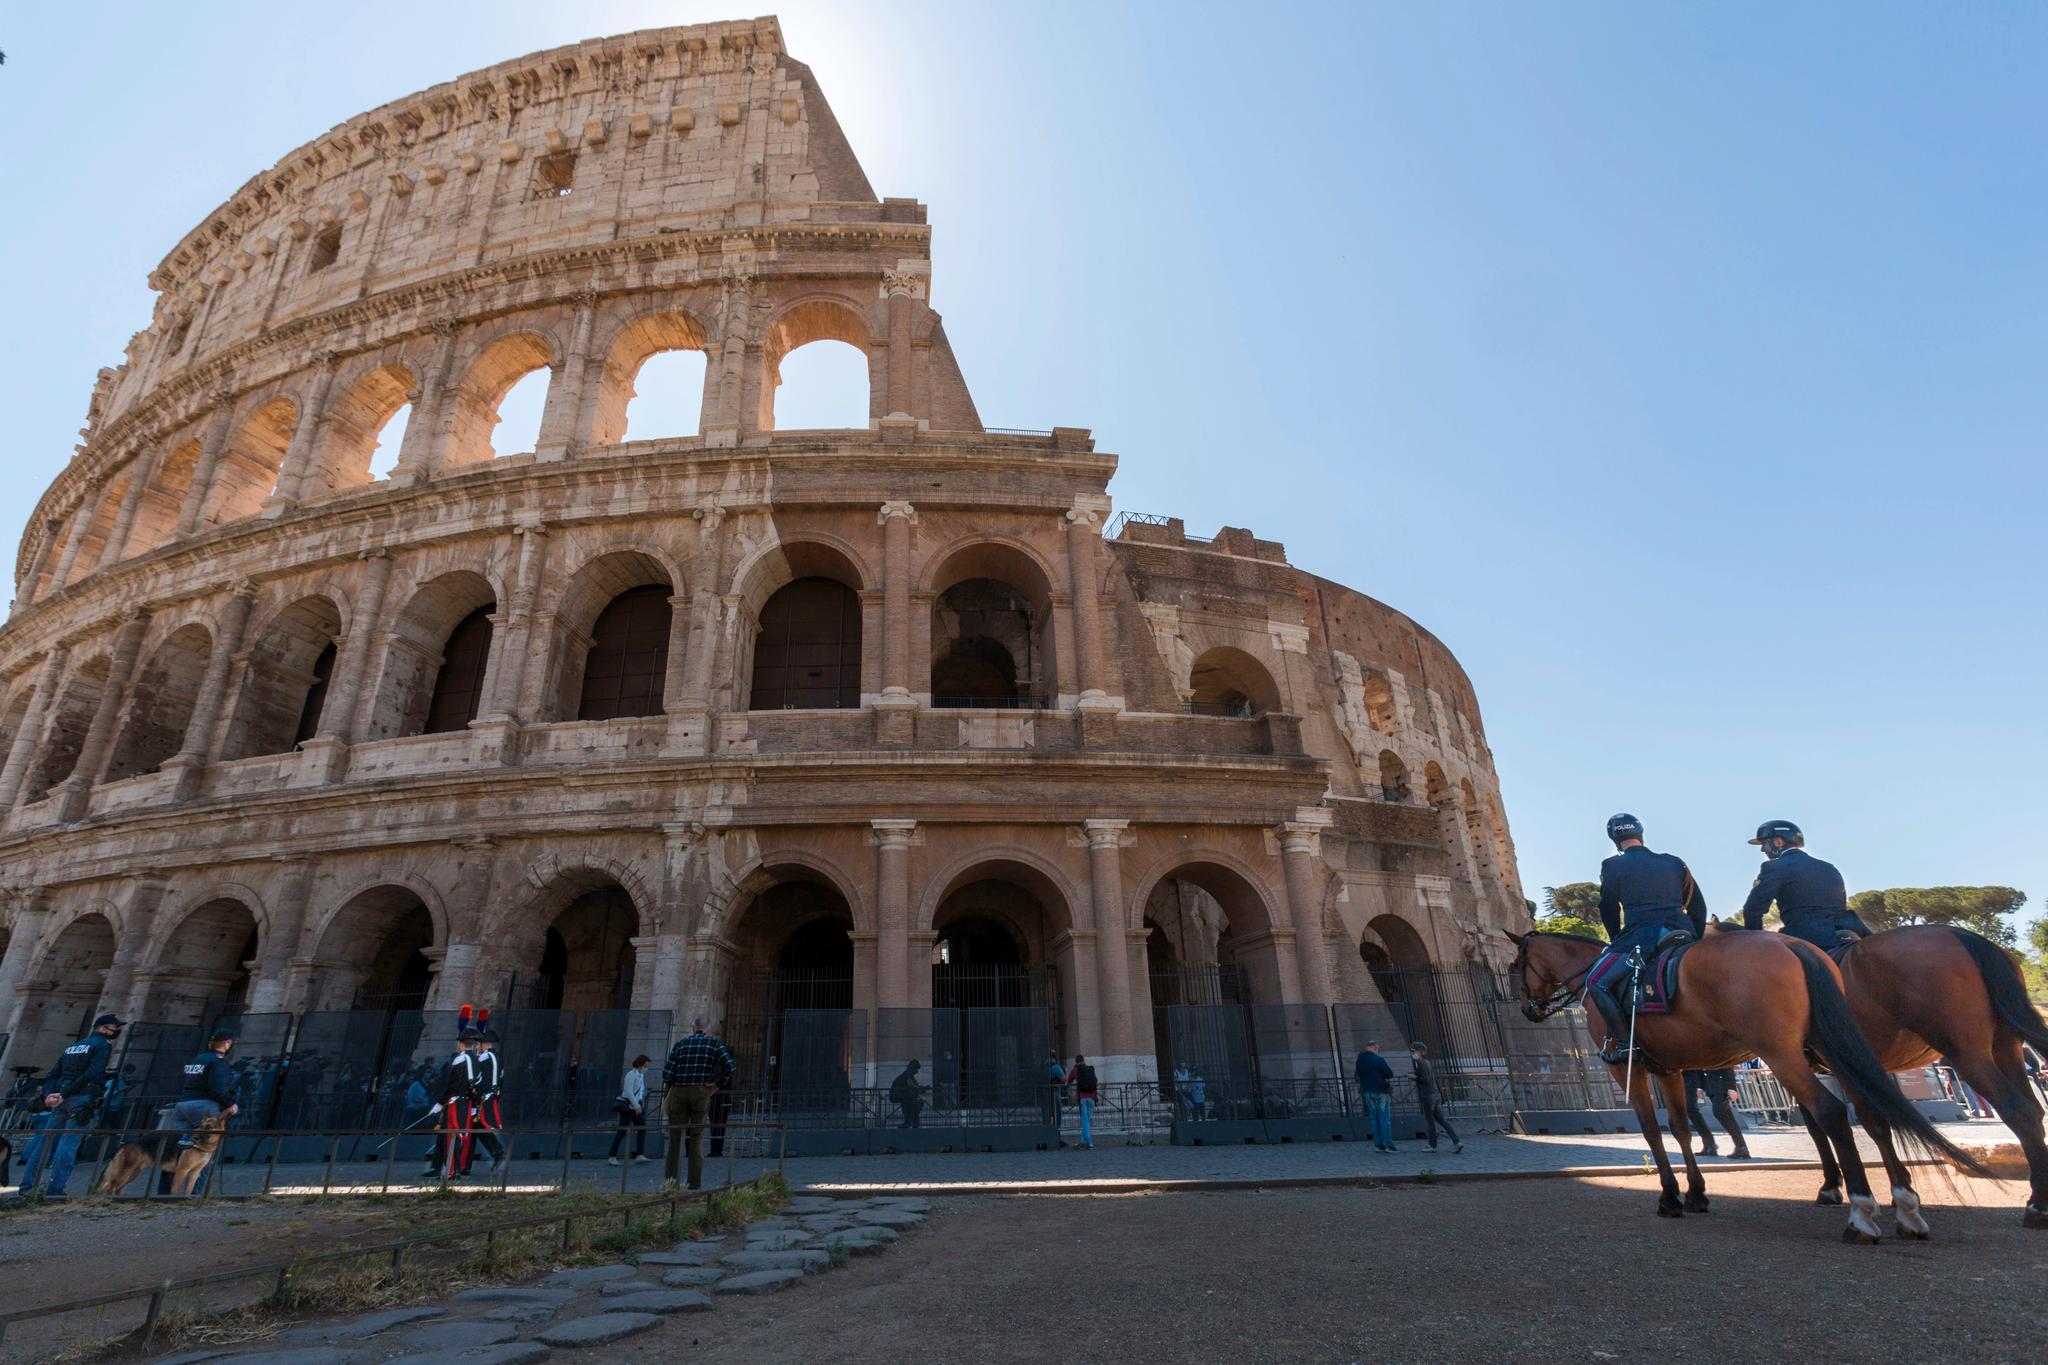 Mannen ble pågrepet av det paramilitære carabinieri-politiet i et parkeringsbygg i Roma. Dette er Colosseum, et gammelt amfiteater i Roma som ble påbegynt 72. e. Kr, og har ingenting med parkeringsbygget hvor spionsaken skjedde. 